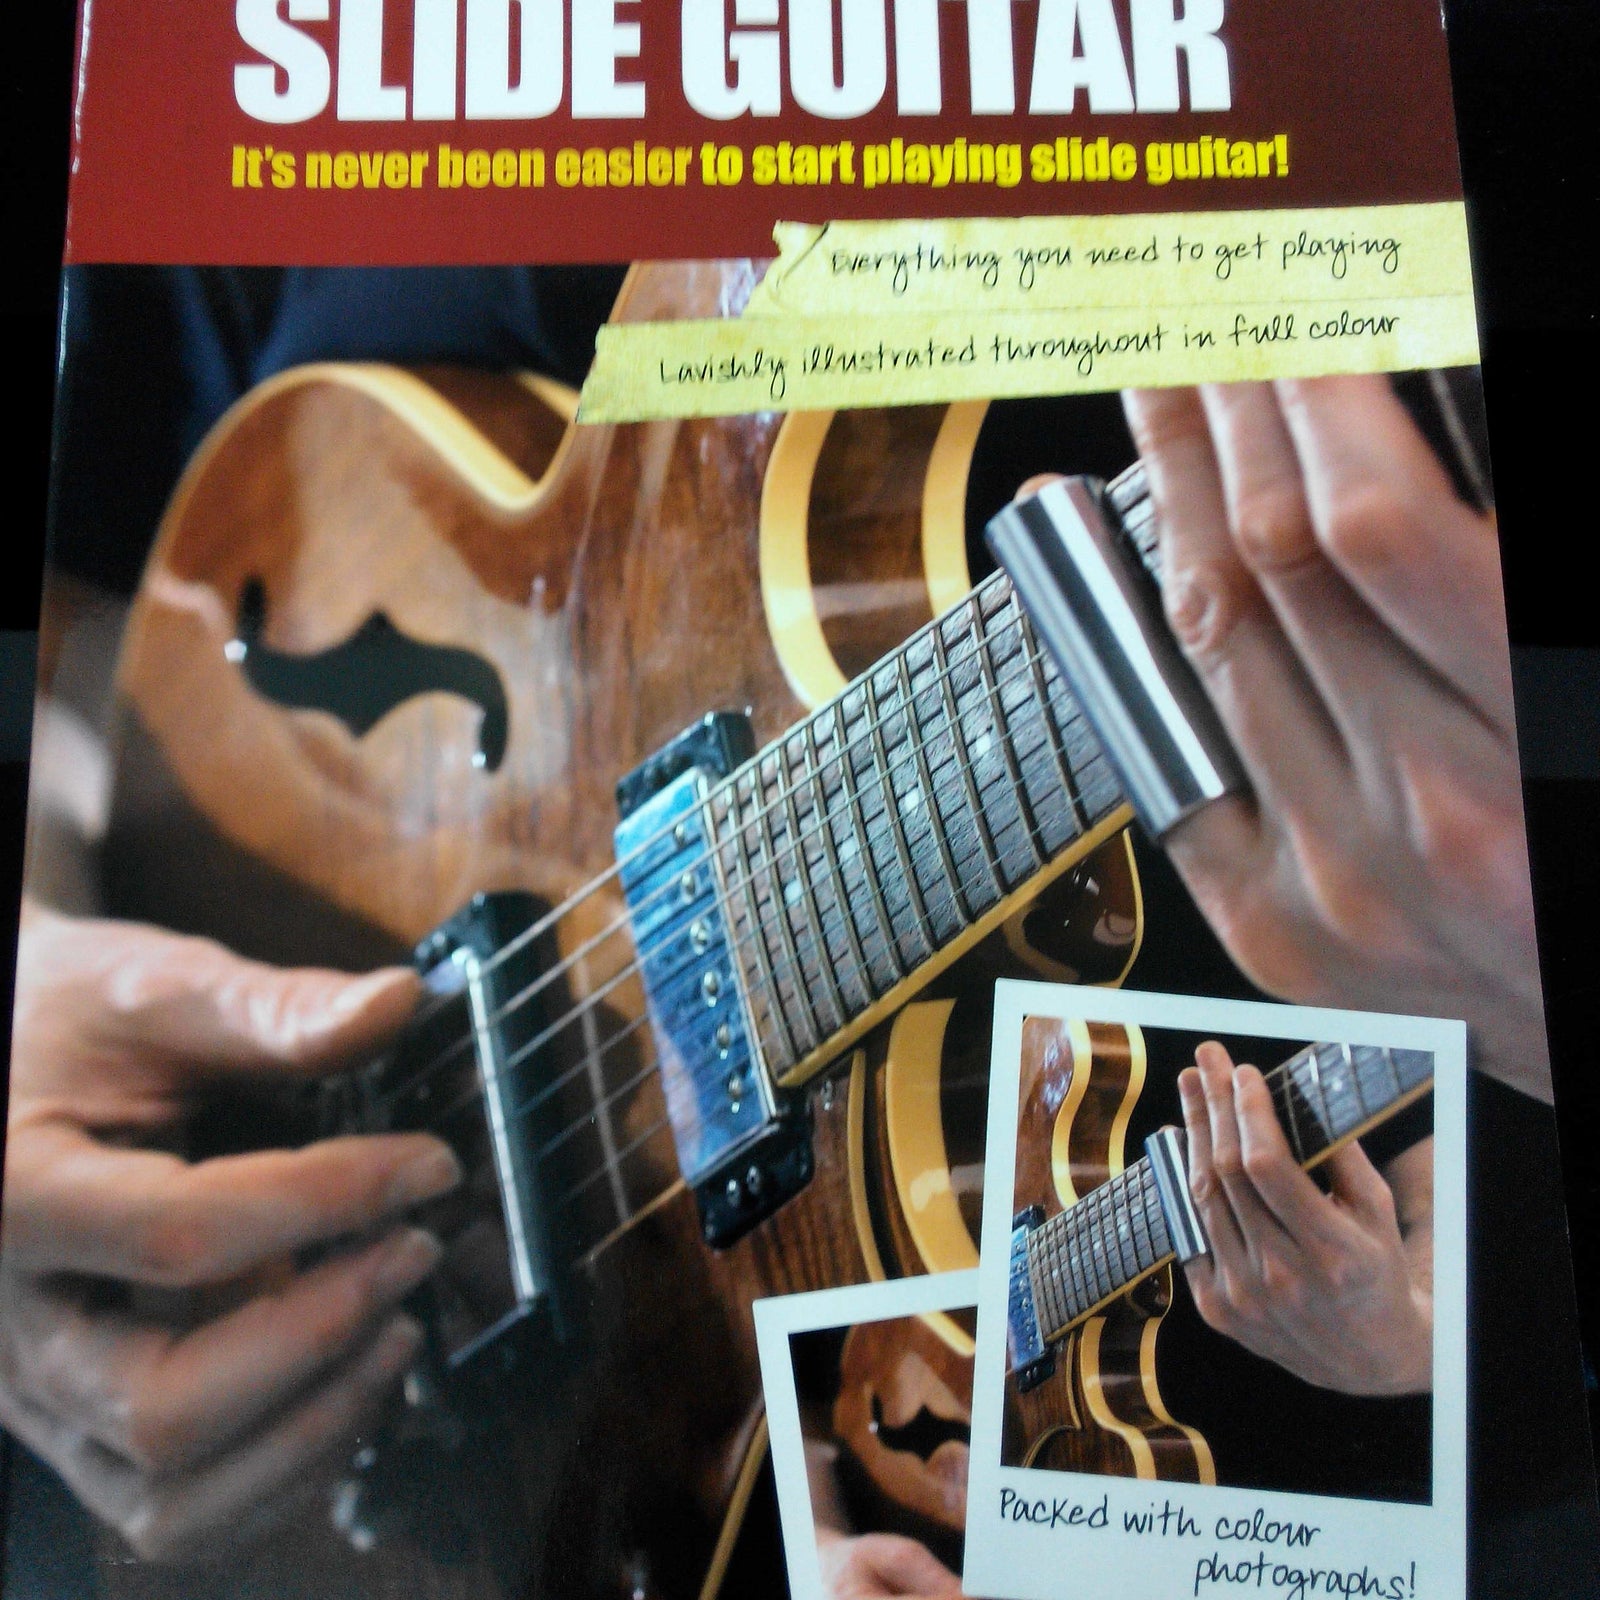 MSL Startup Slide Guitar GTR Bk